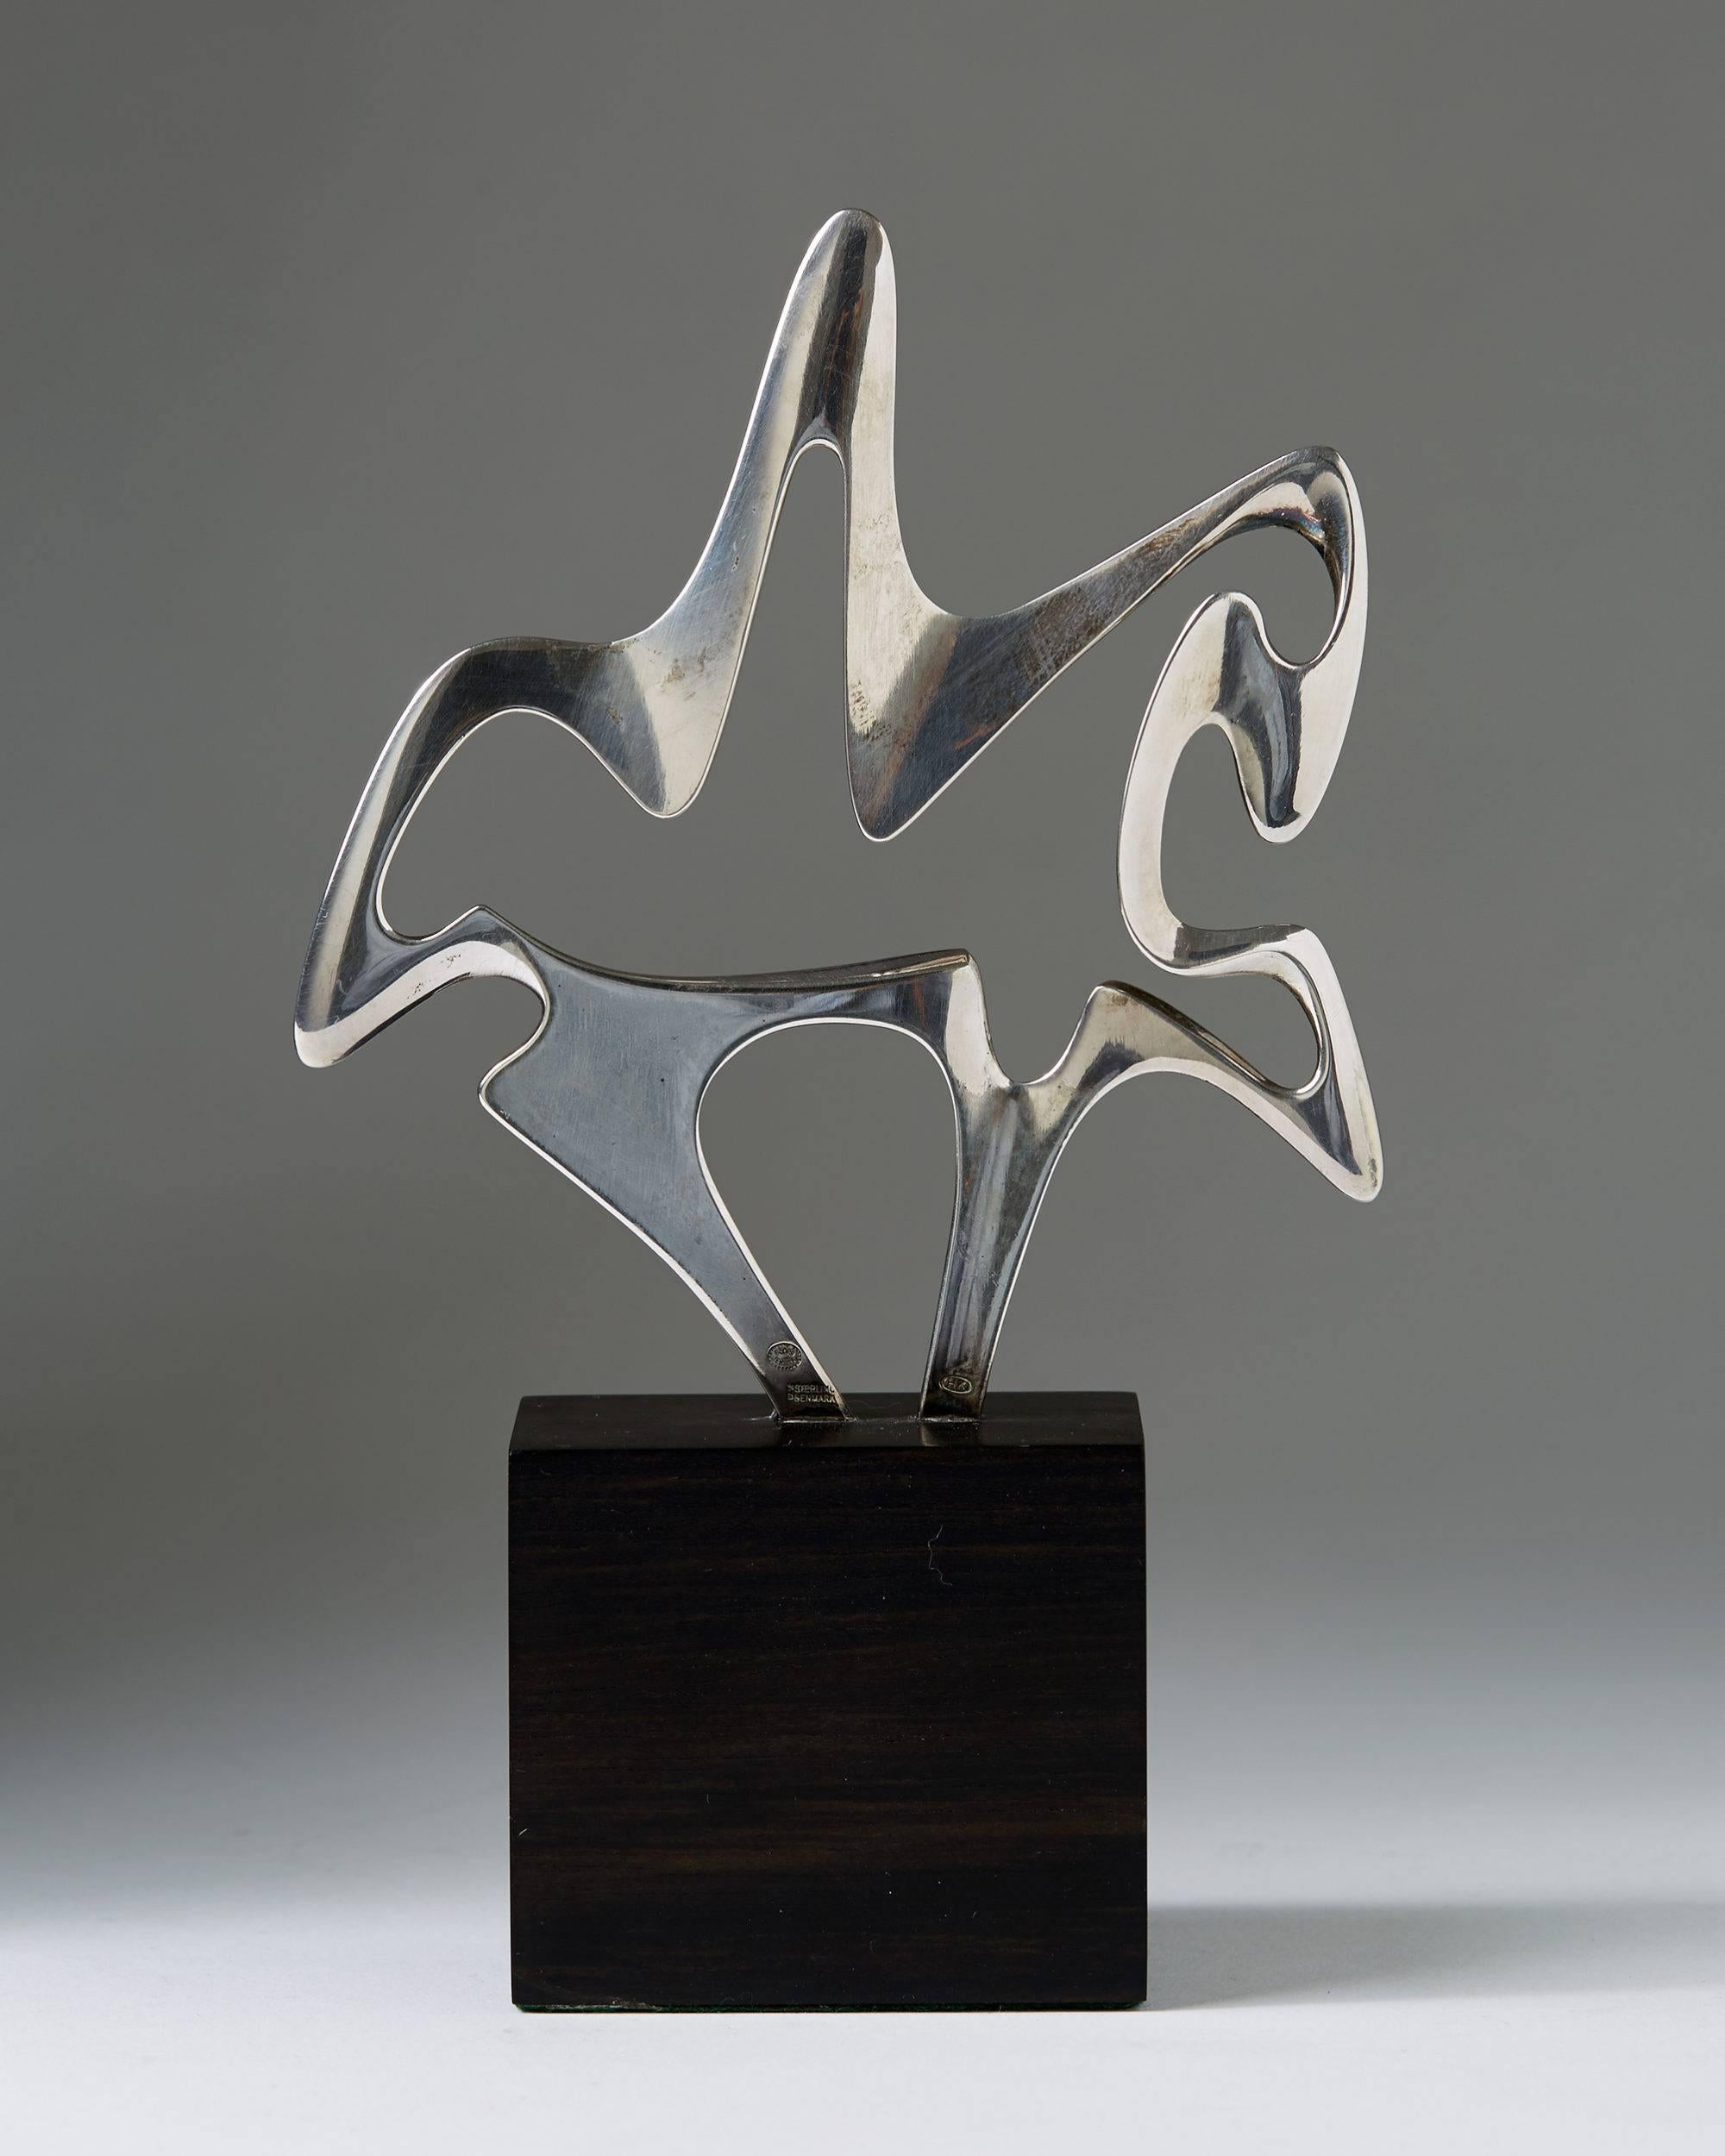 Sculpture conçue par Henning Koppel pour Georg Jensen, Danemark, années 1970.
Argent sterling et ébène.
Dimensions :
H 16 cm/ 6 1/4